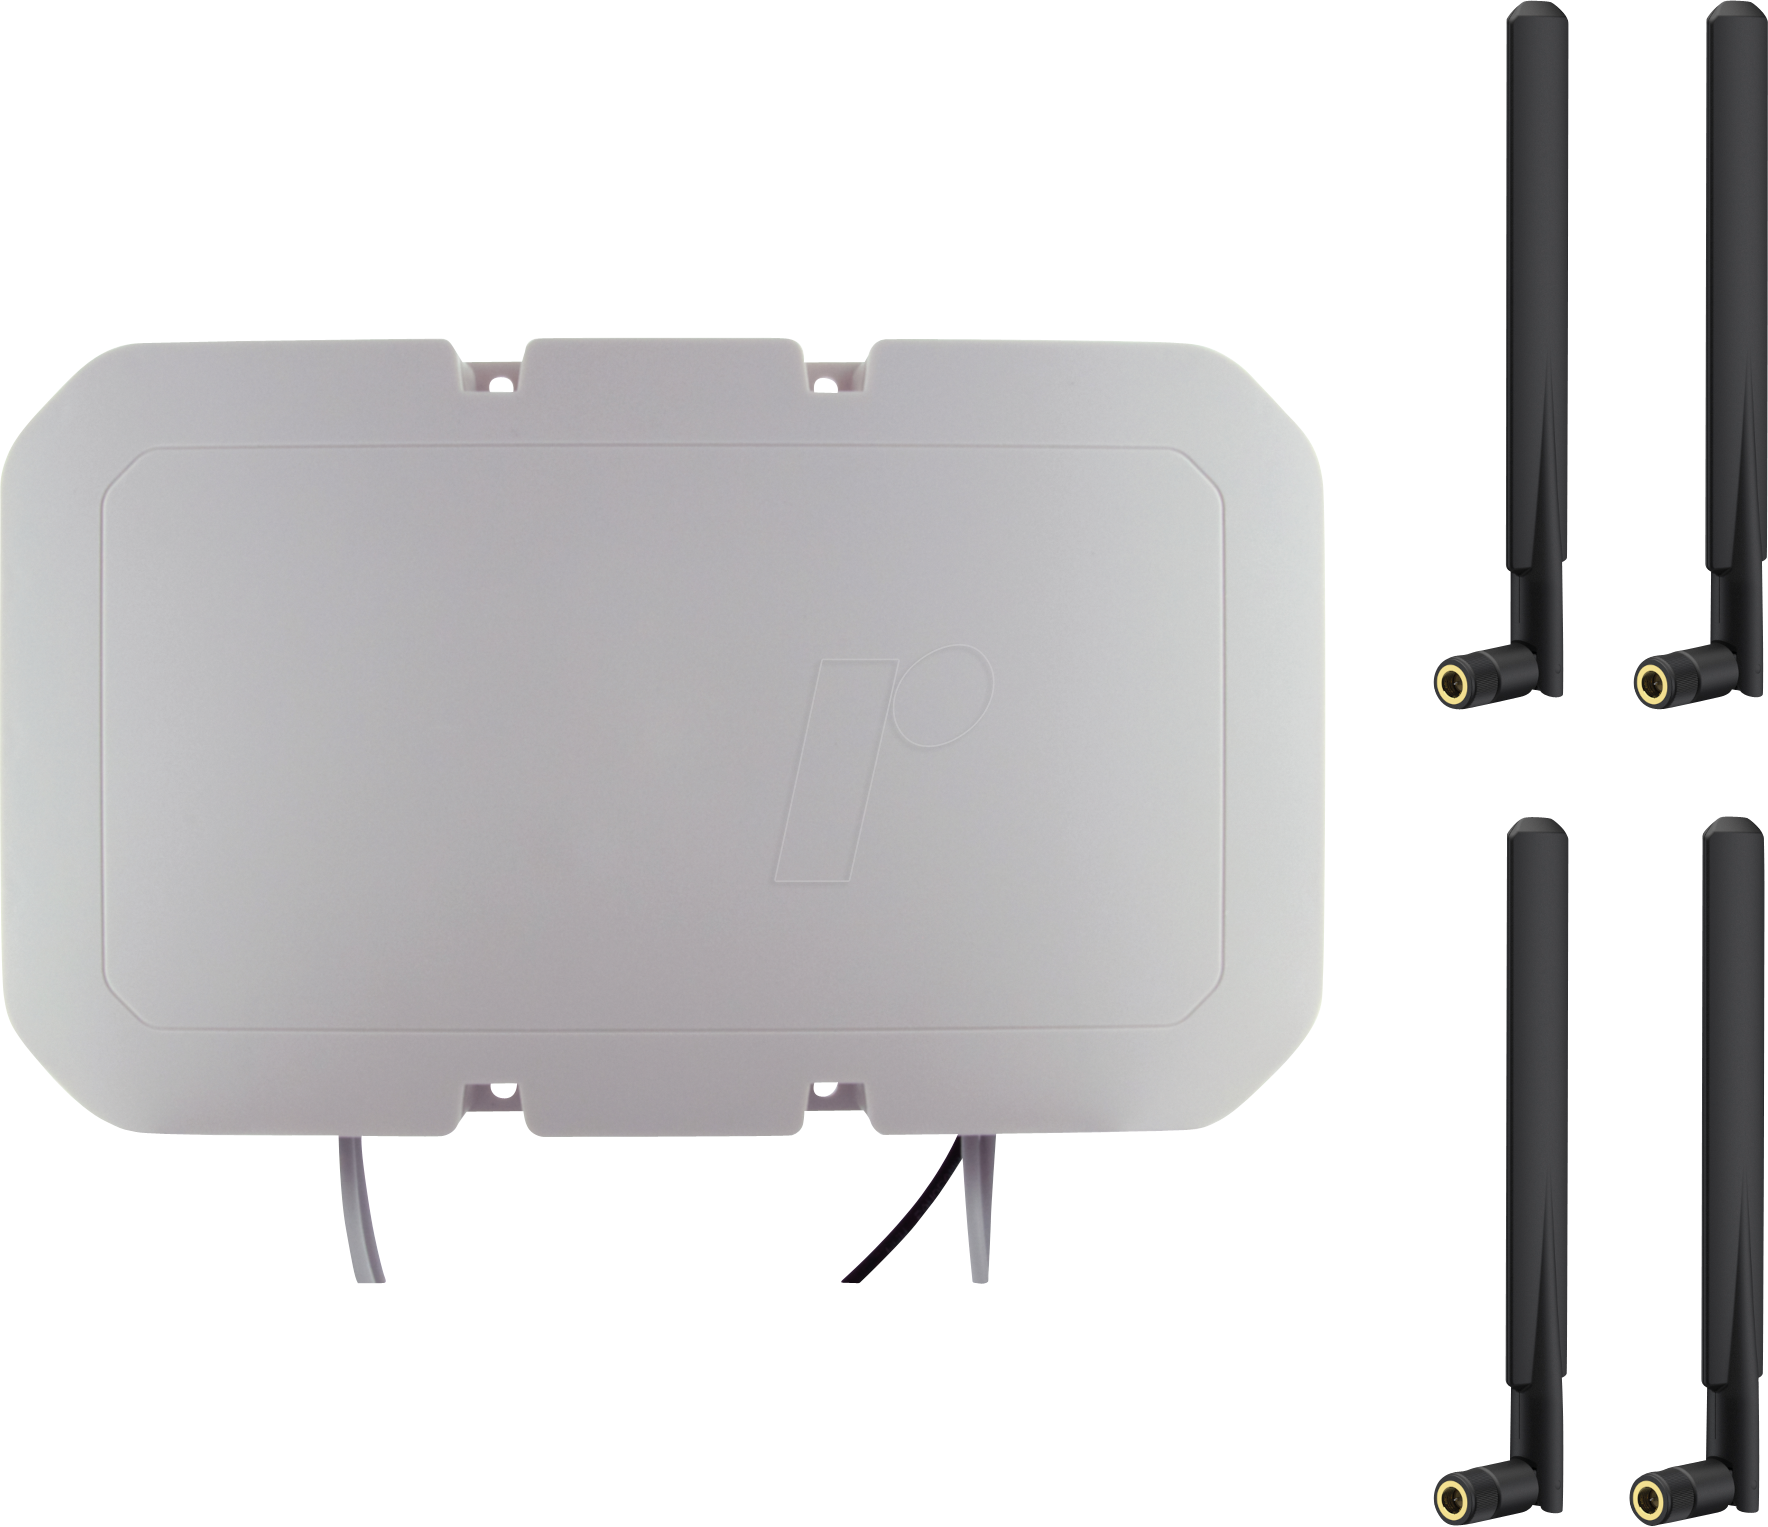 ANTKIT-4M4W1GBUI - Antennenkit für Router, Gebäude, Mobilfunk, WLAN, GPS von PANORAMA ANTENNAS